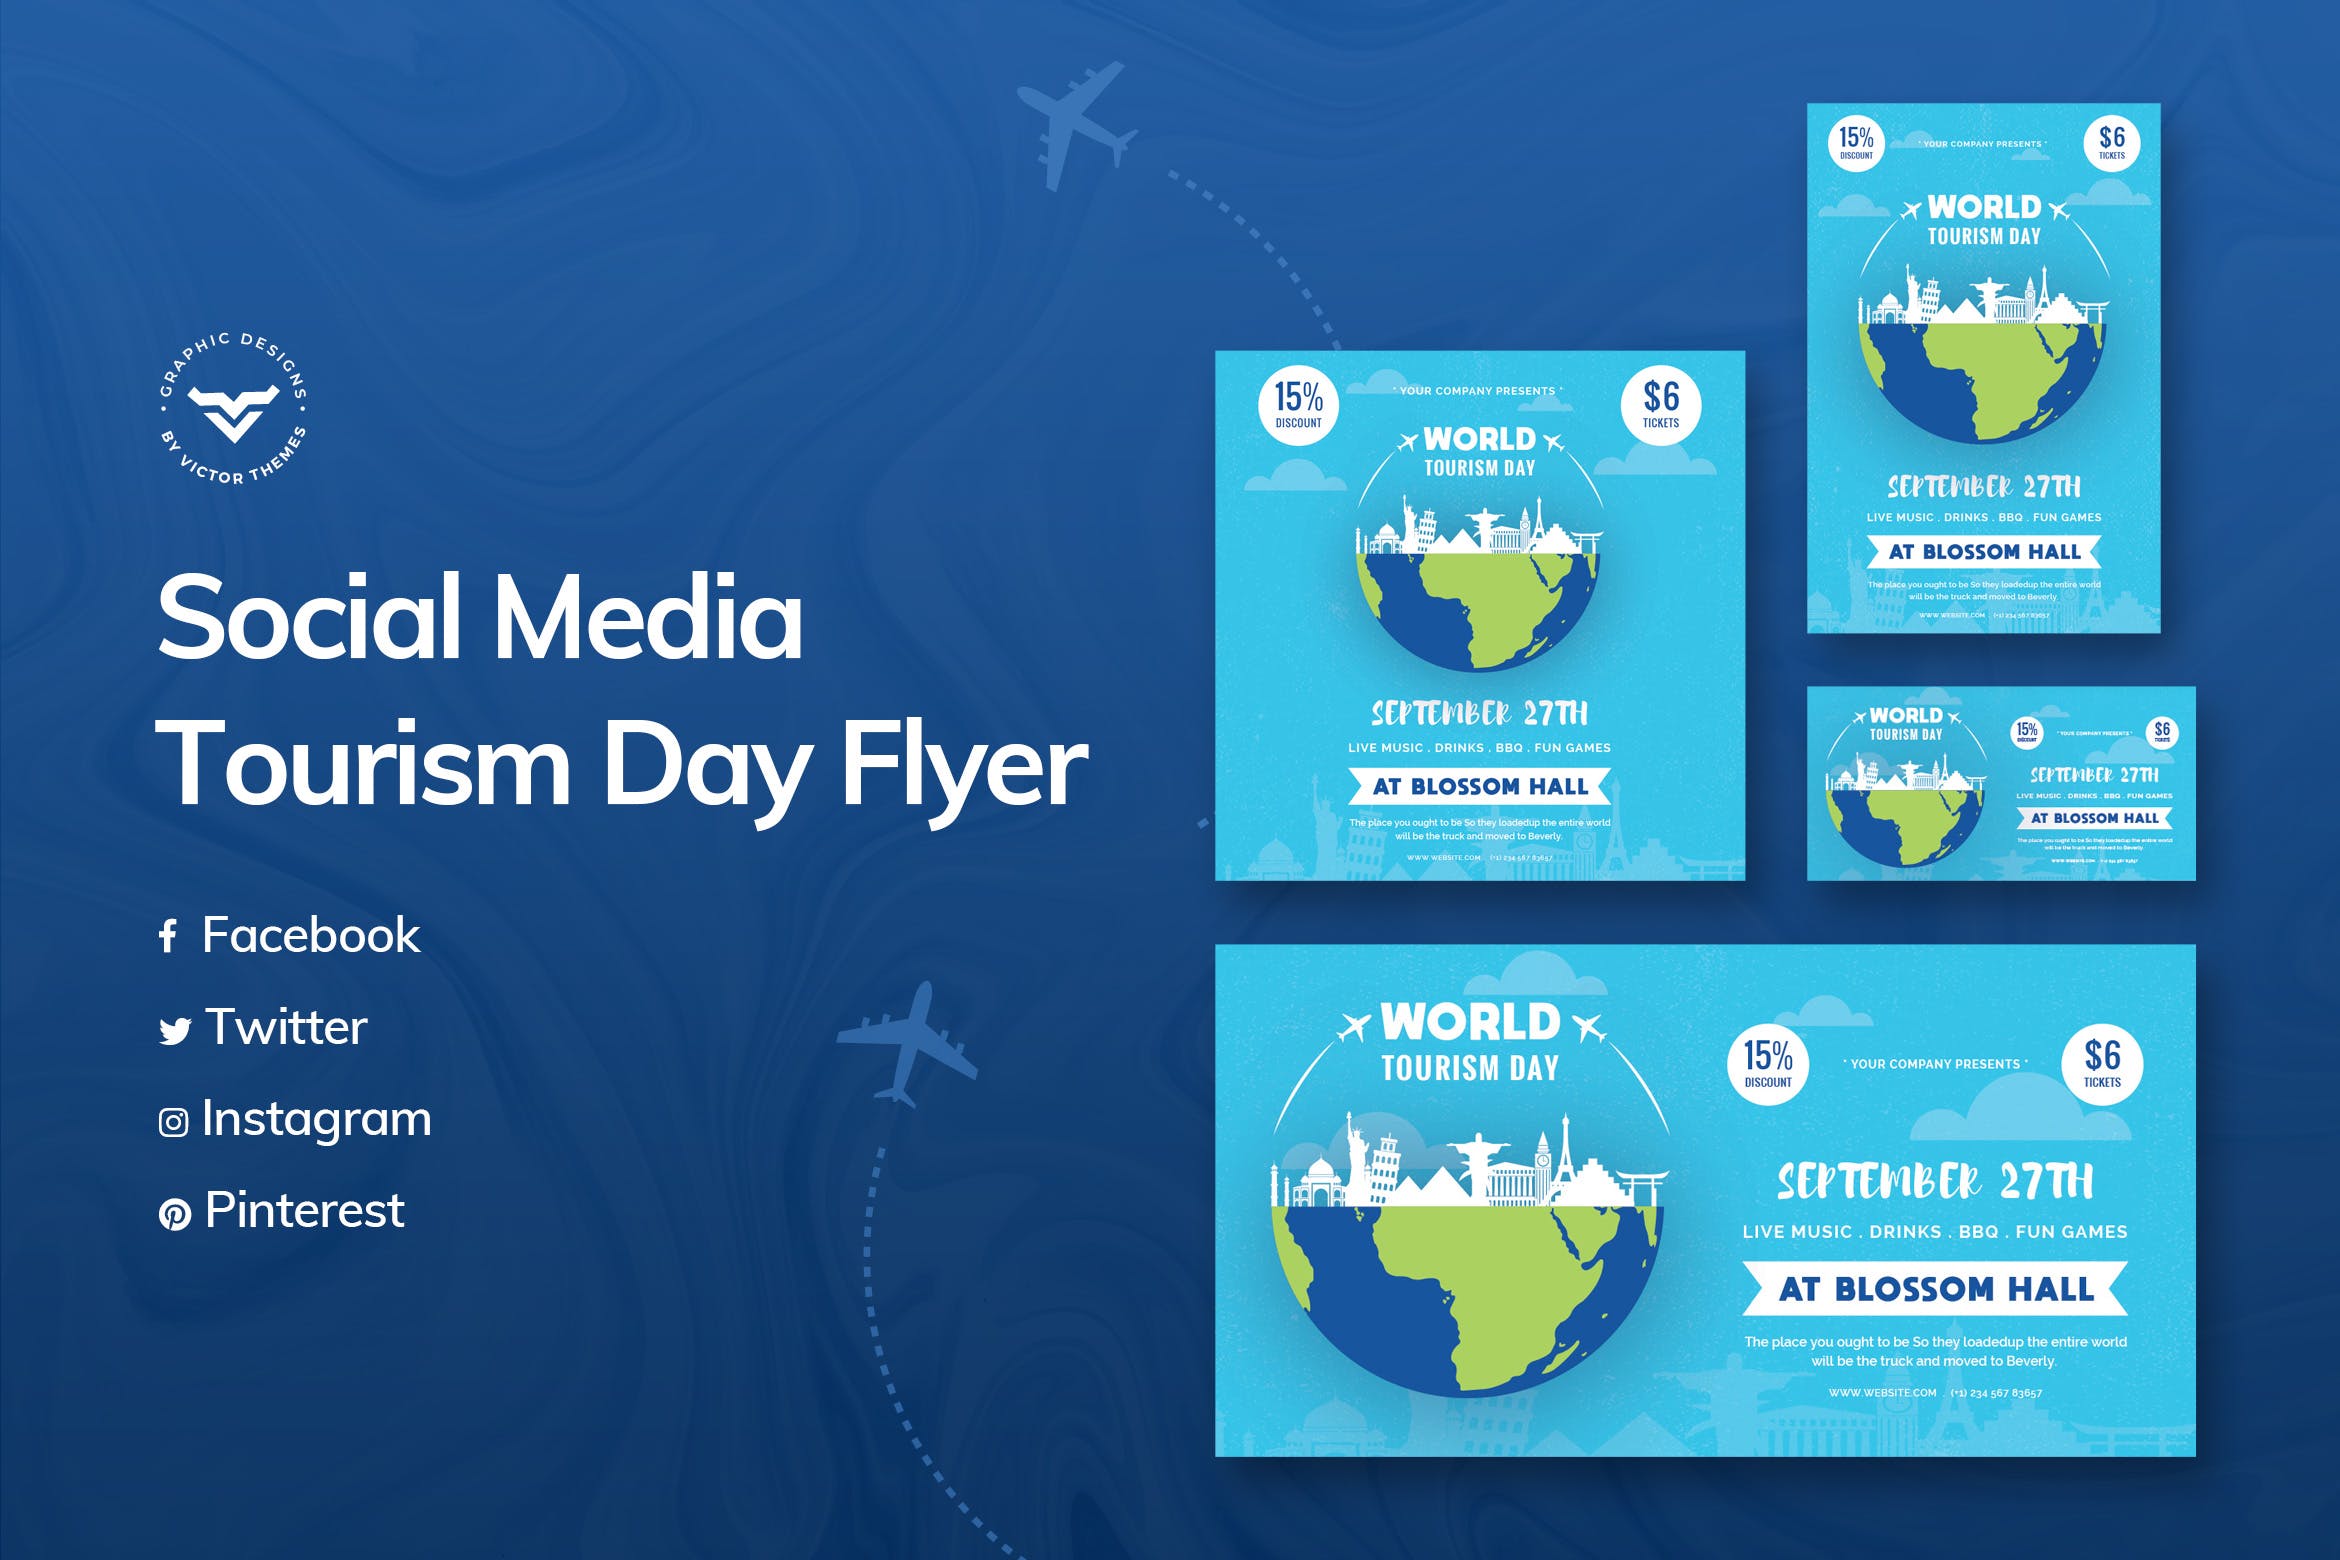 世界旅游日主题推广社交媒体设计模板16图库精选 World Tourism Day Social Media Template插图